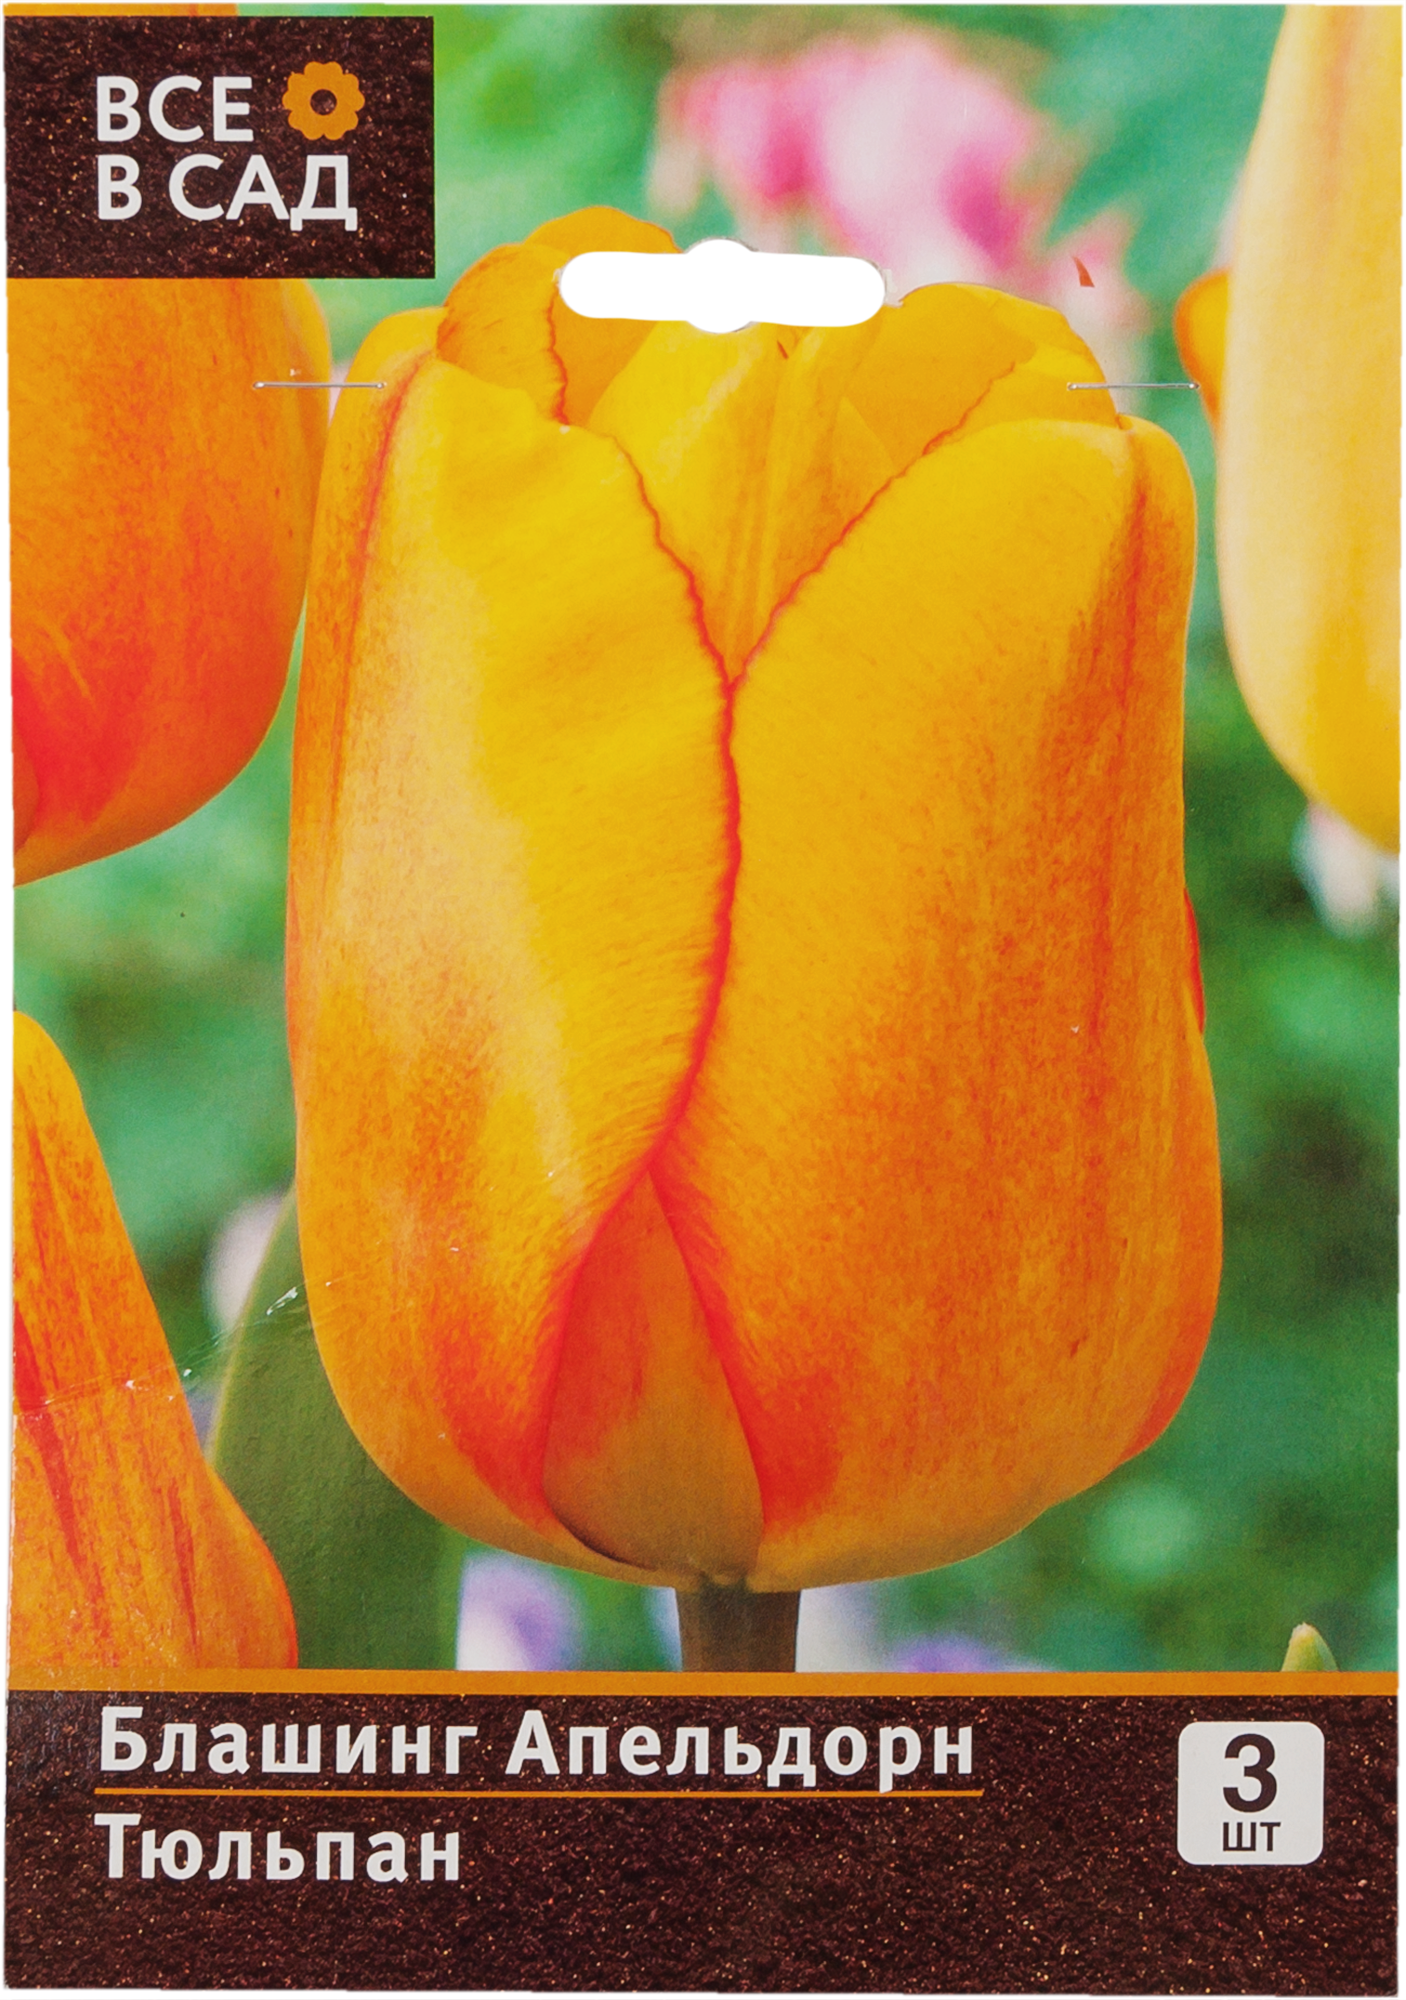 Тюльпан голден апельдорн фото и описание